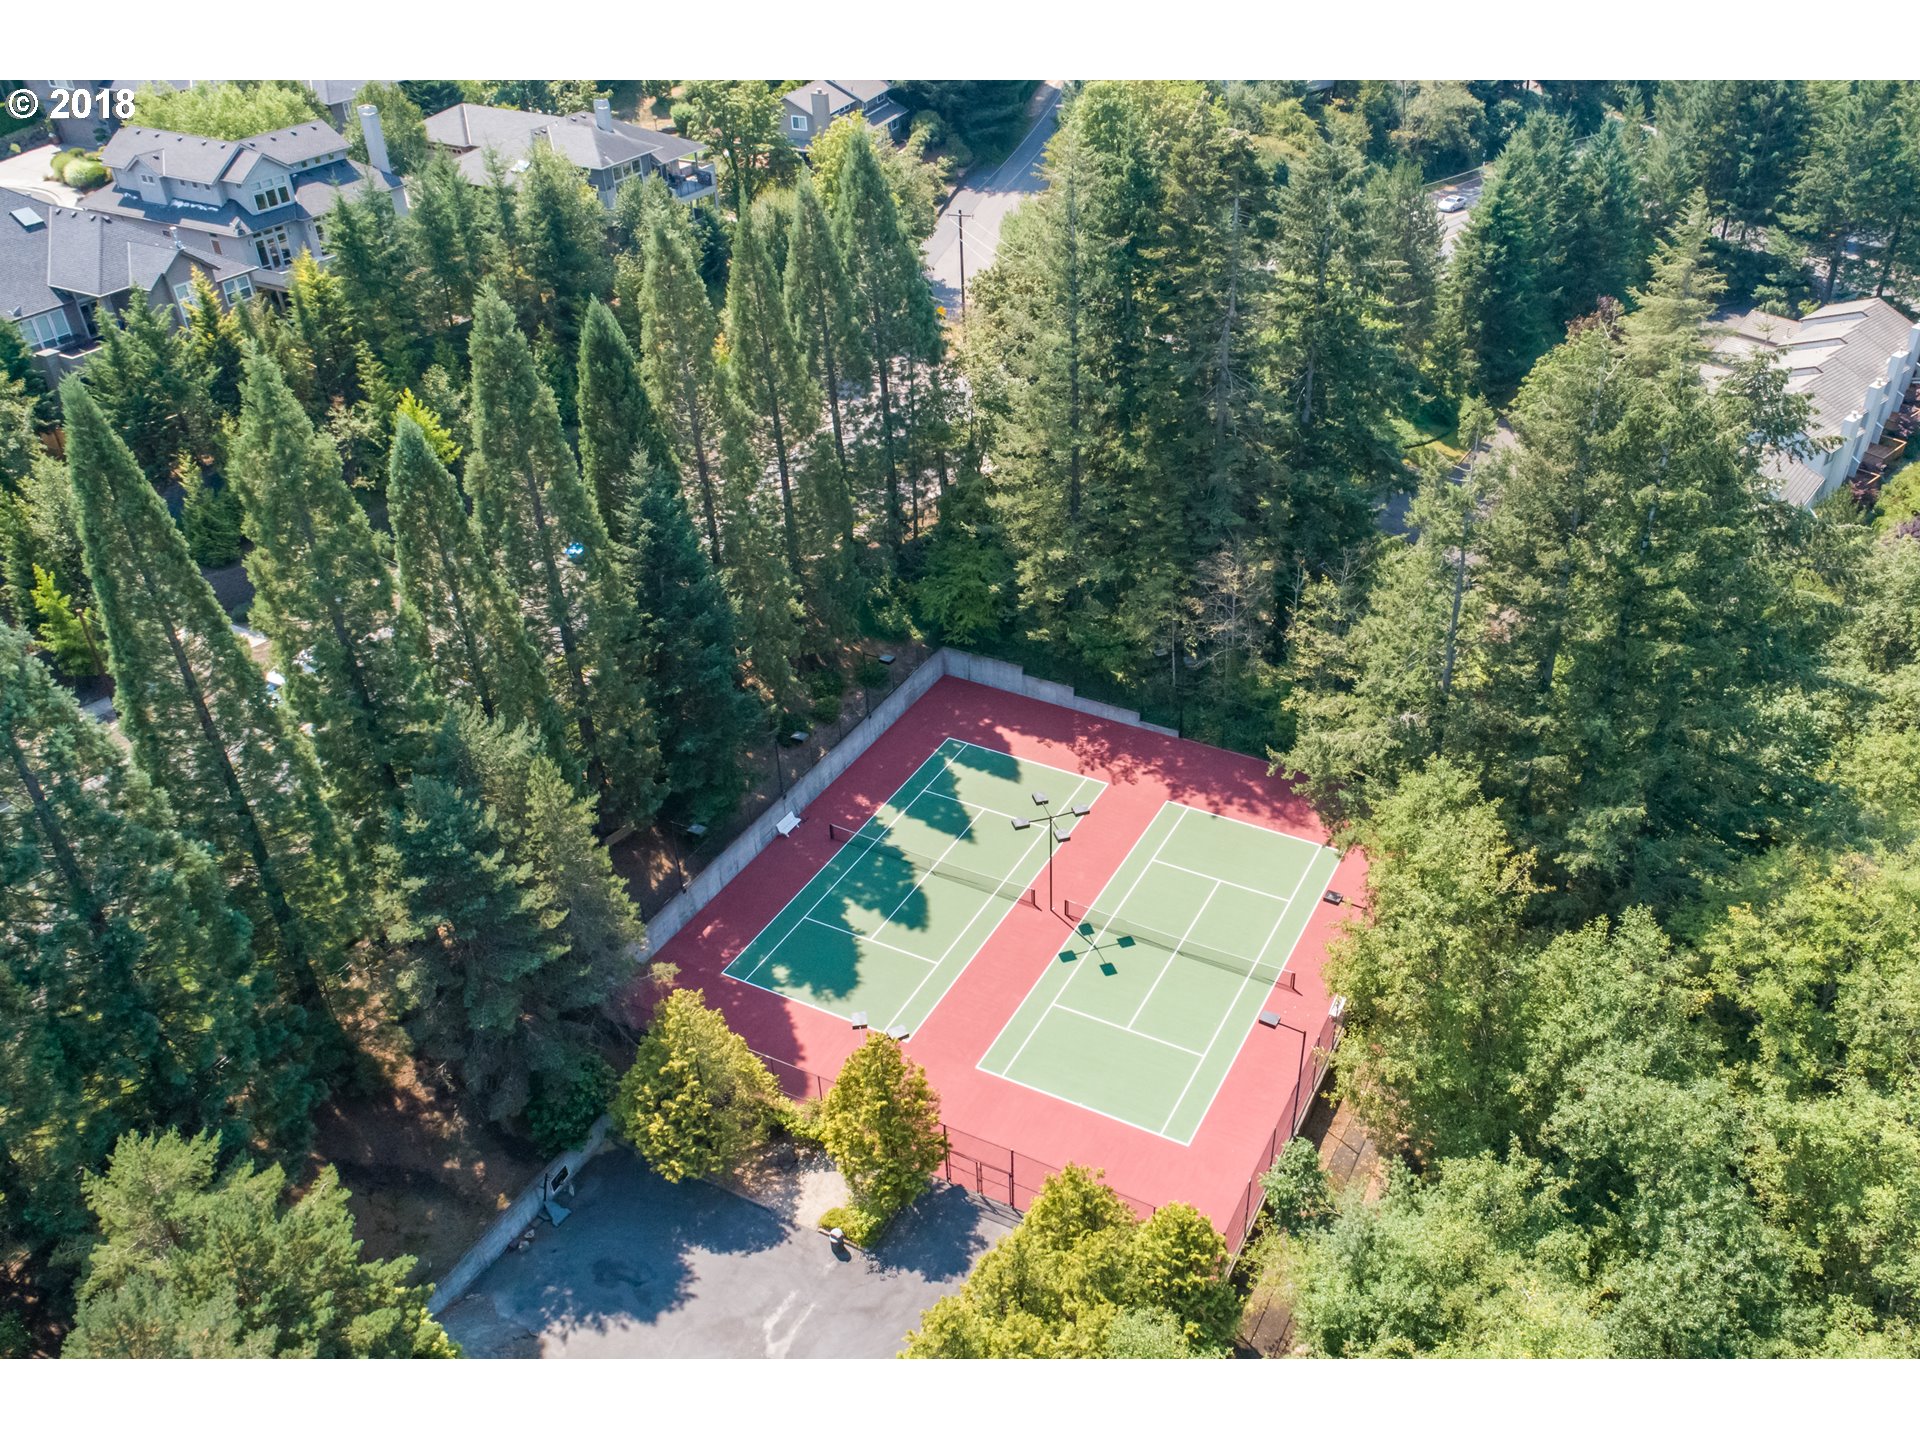 Photo #35: Tennis Court